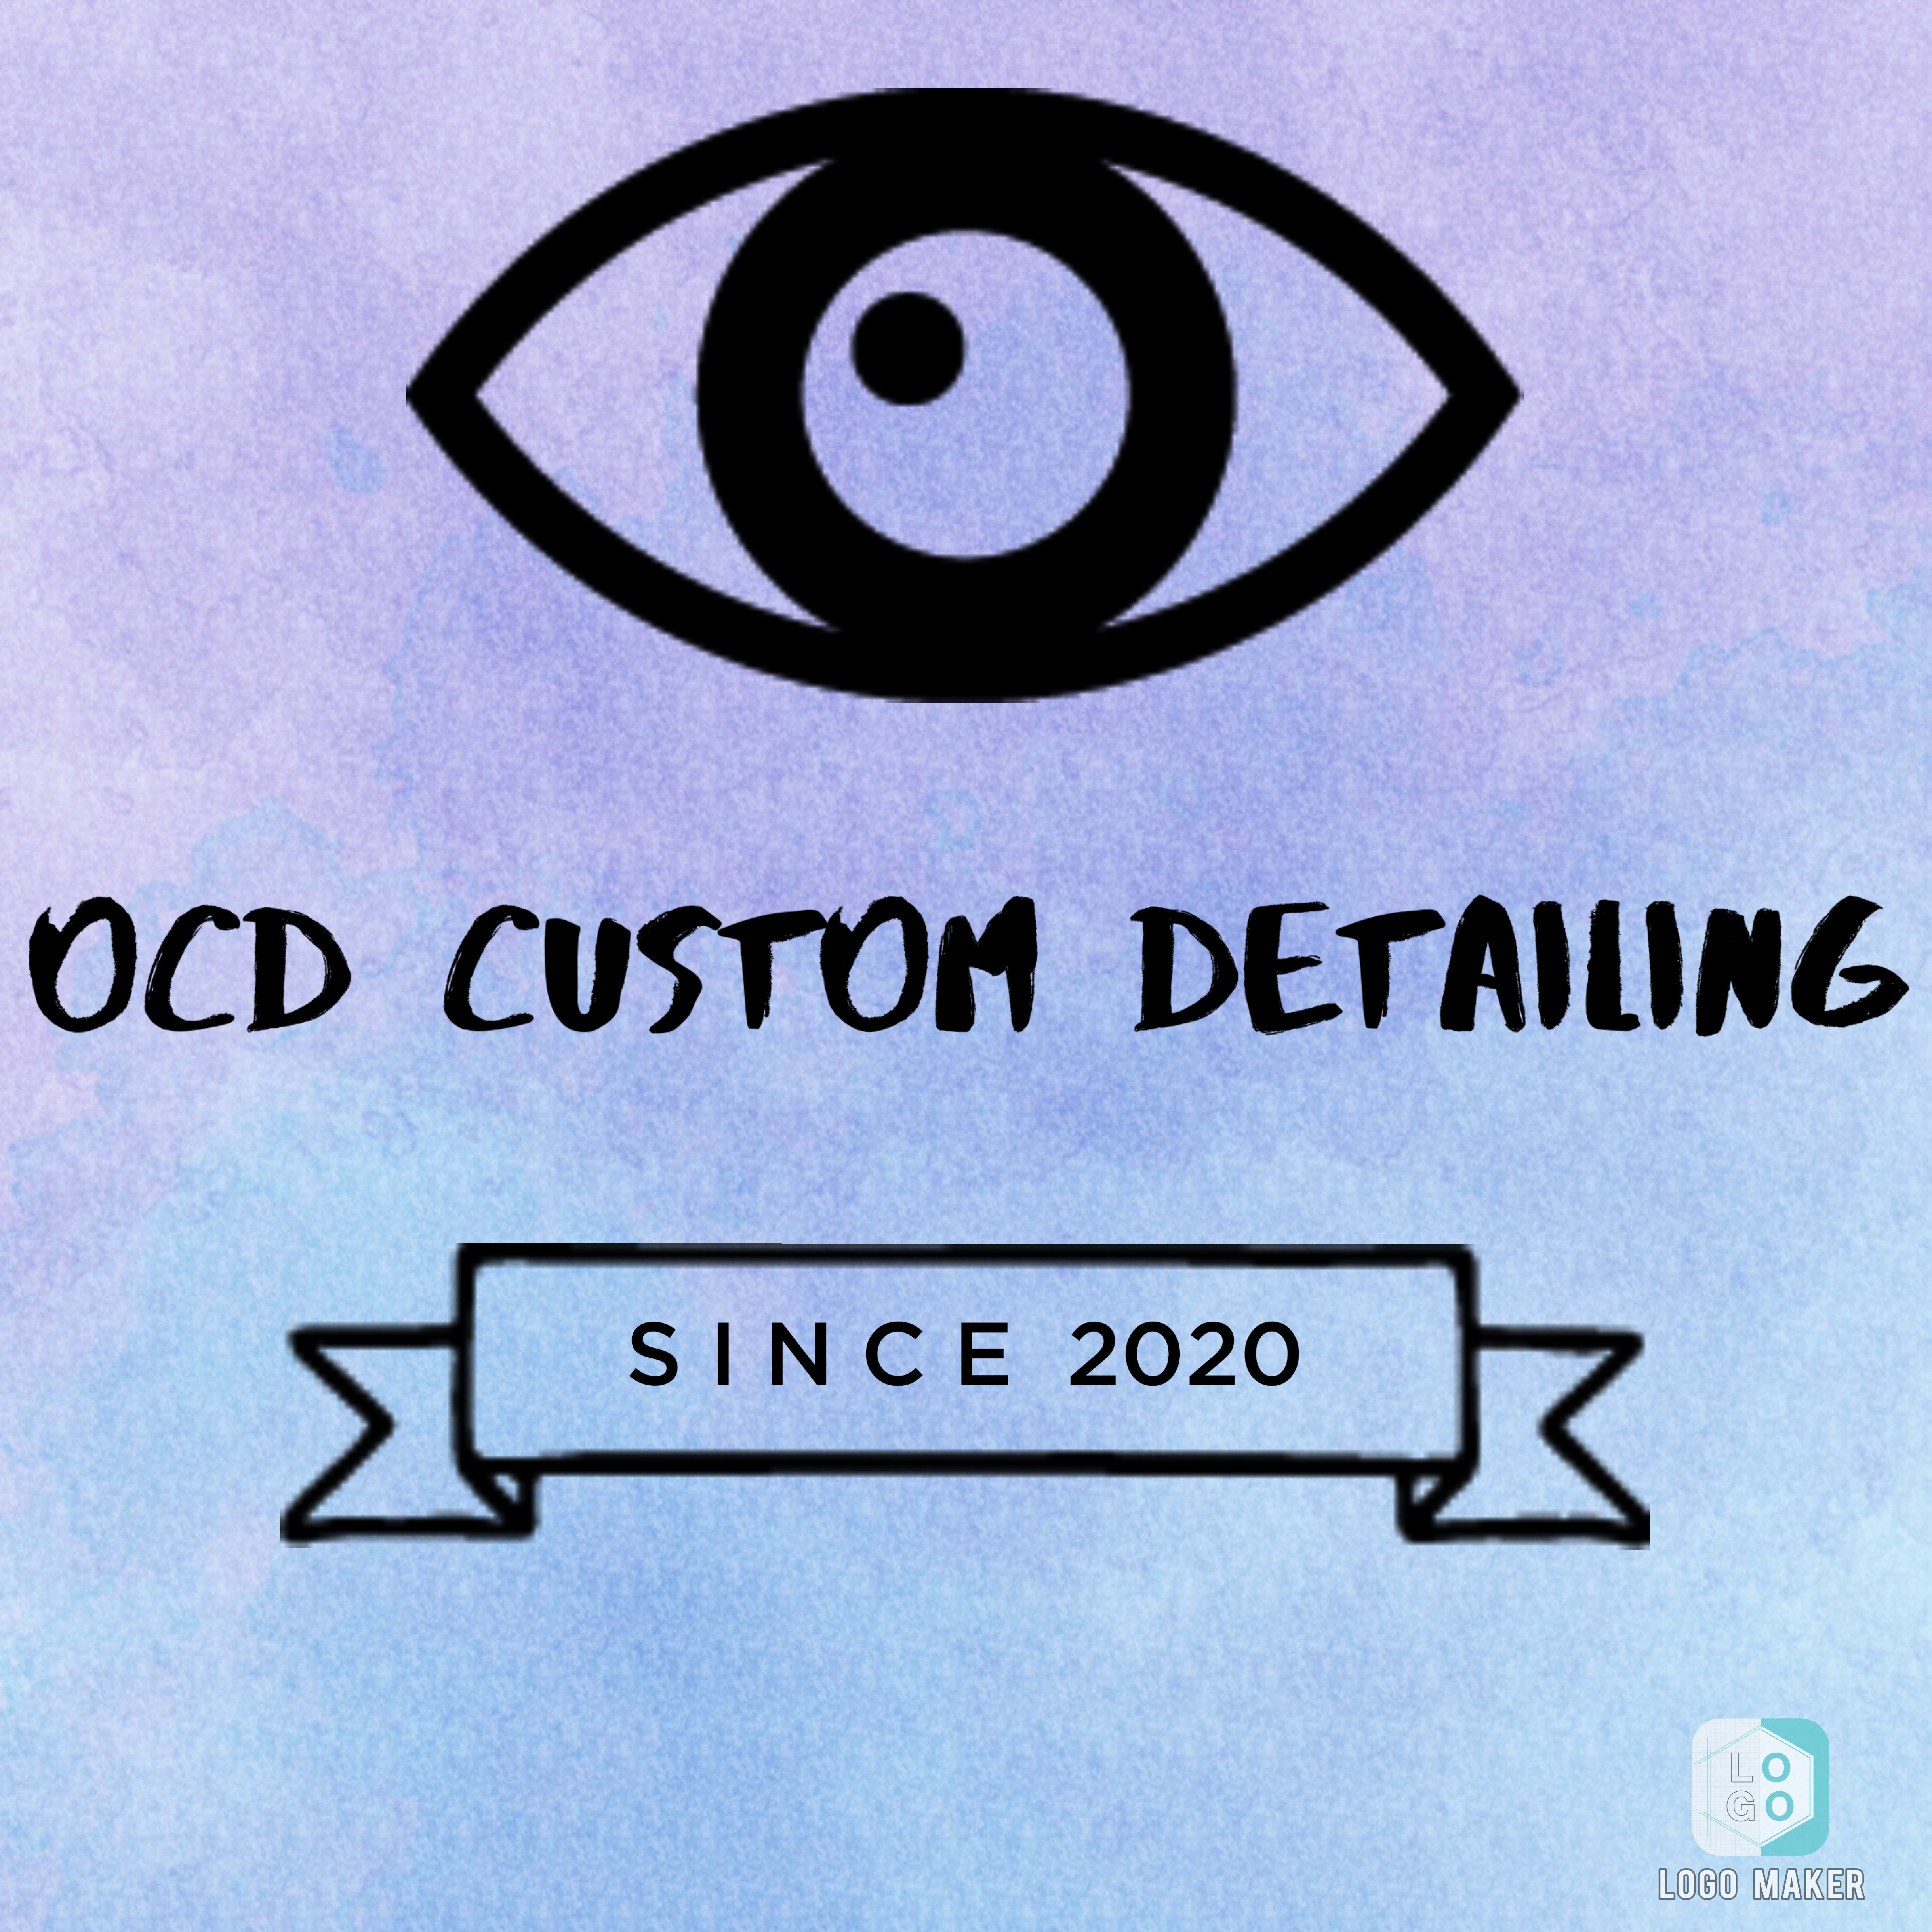 Ocd Custom Detailing